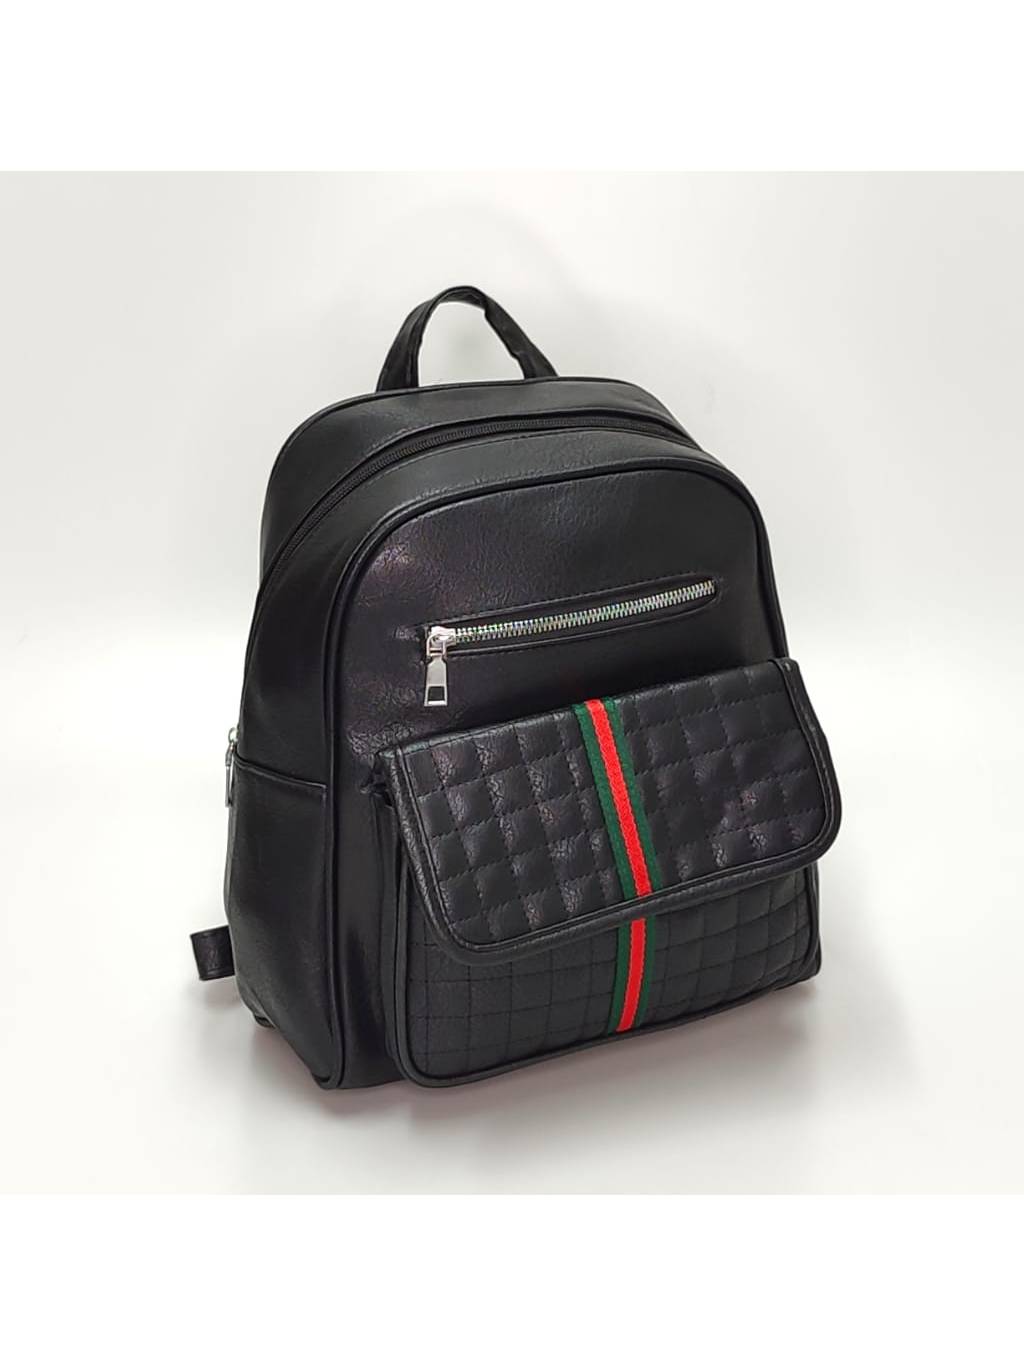 Dámsky ruksak 2571 čierny www.kabelky vypredaj.eu (2)